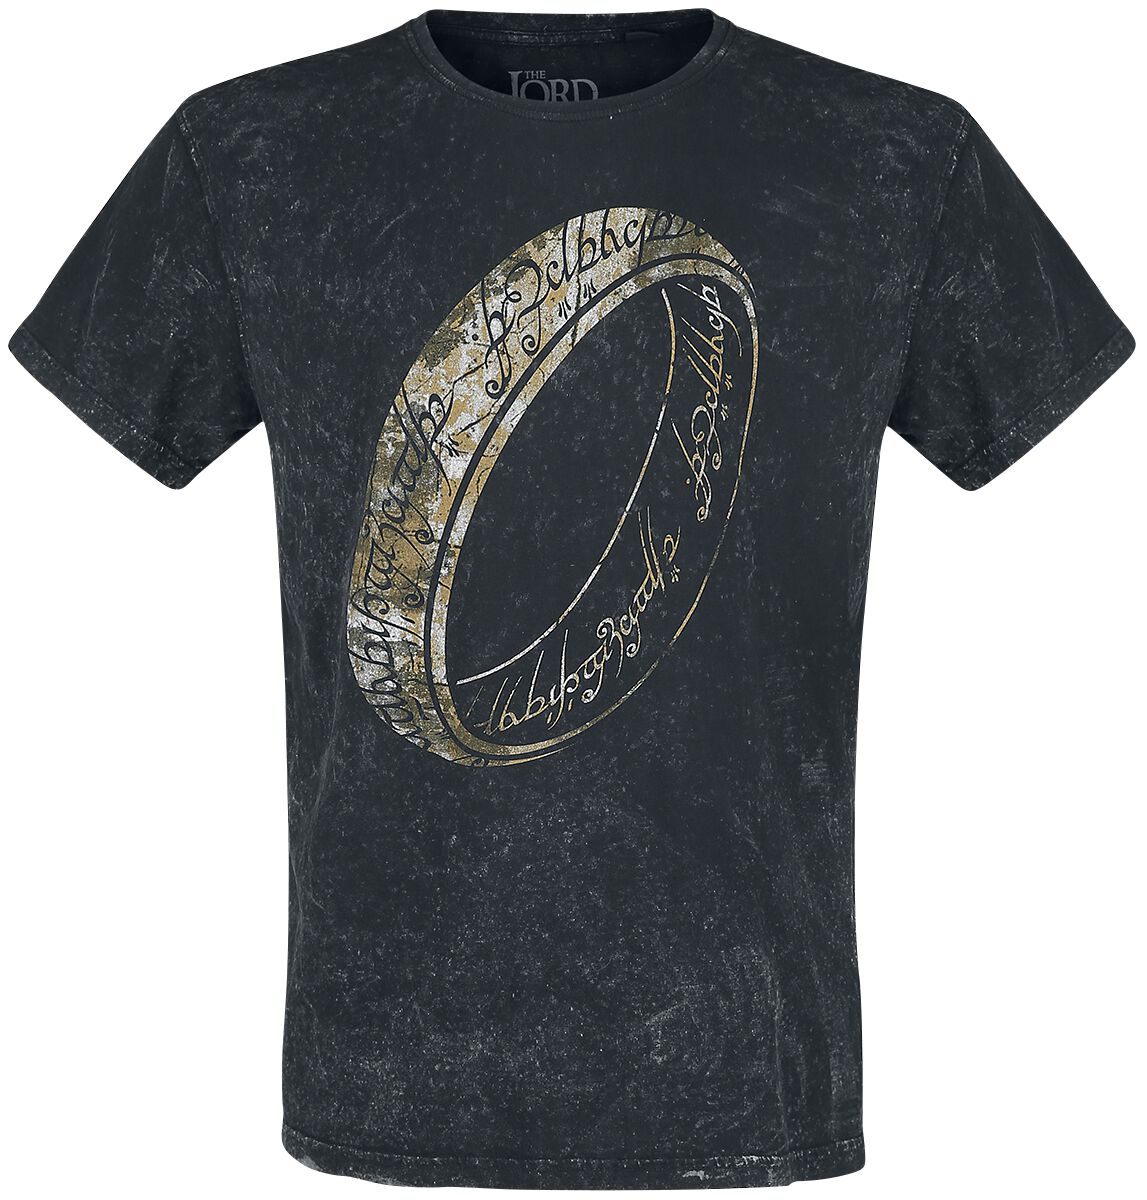 Der Herr der Ringe T-Shirt - One Ring To Rule Them All - M bis XXL - für Männer - Größe L - schwarz  - EMP exklusives Merchandise!